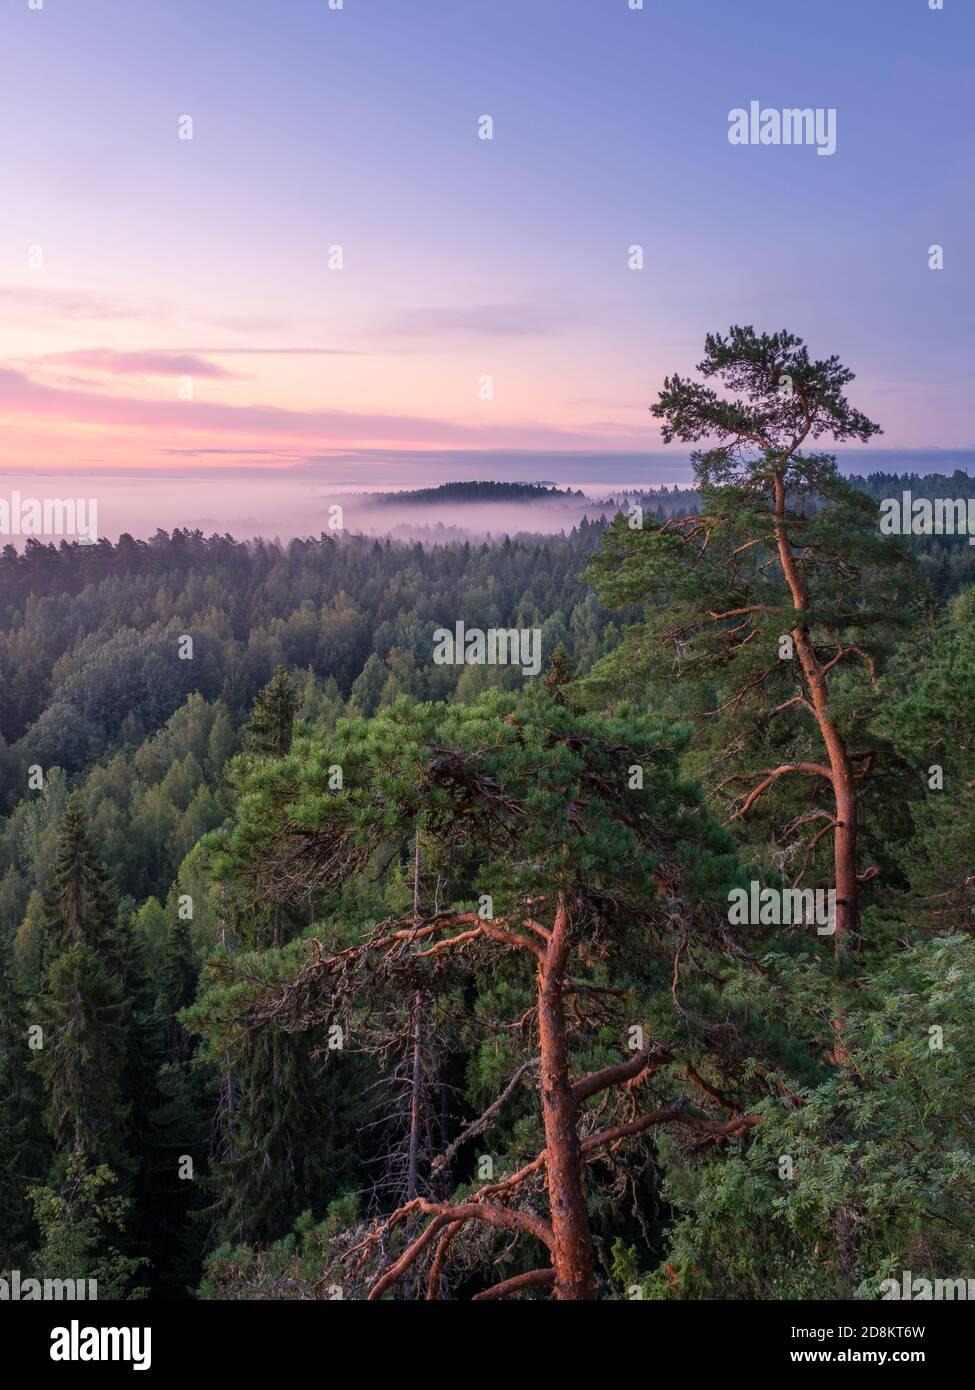 Malerische neblige Landschaft mit Stimmung Wald am Sommer, der Morgen im Nationalpark, Finnland. Hohen winkel Luftaufnahme. Stockfoto